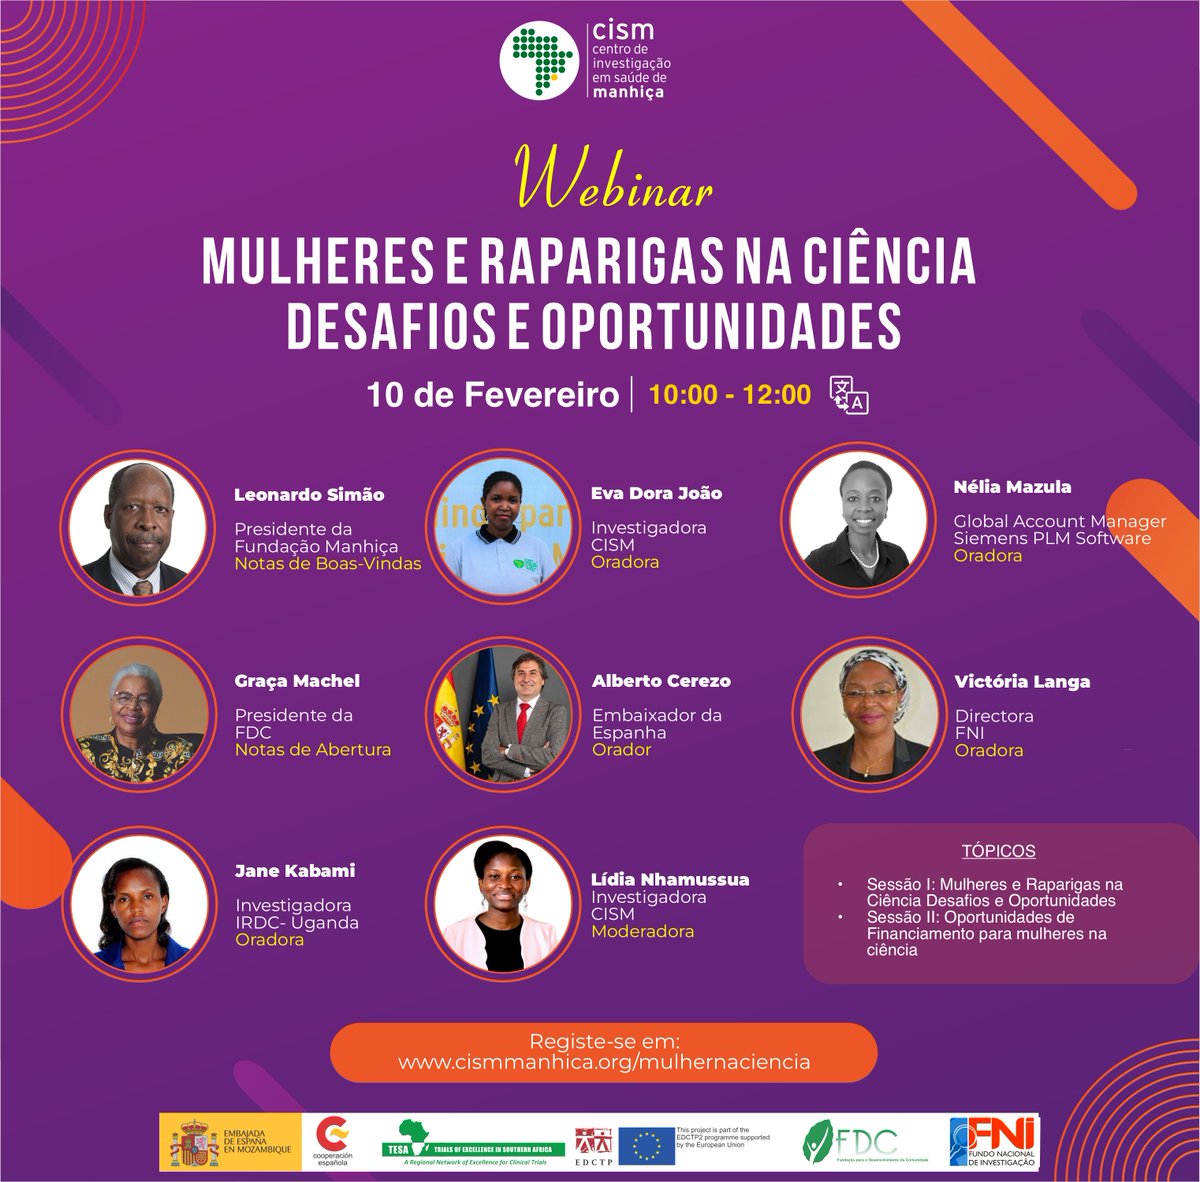 ✍🏾 Mulheres e Raparigas na Ciência – Desafios e Oportunidades
💡 Webinar 
📅 10 de Fevereiro
⏰ 10h - 12h00 
🌐 cismmanhica.org/mulhernaciencia
🫂: @AECID_es @EDCTP  @FDC_Moz  #tesa #FNI @EmbEspMaputo 

@OzerecO #mulheresnaciencia #mozambique #womeninscience #mulher  #igualdadedegenero